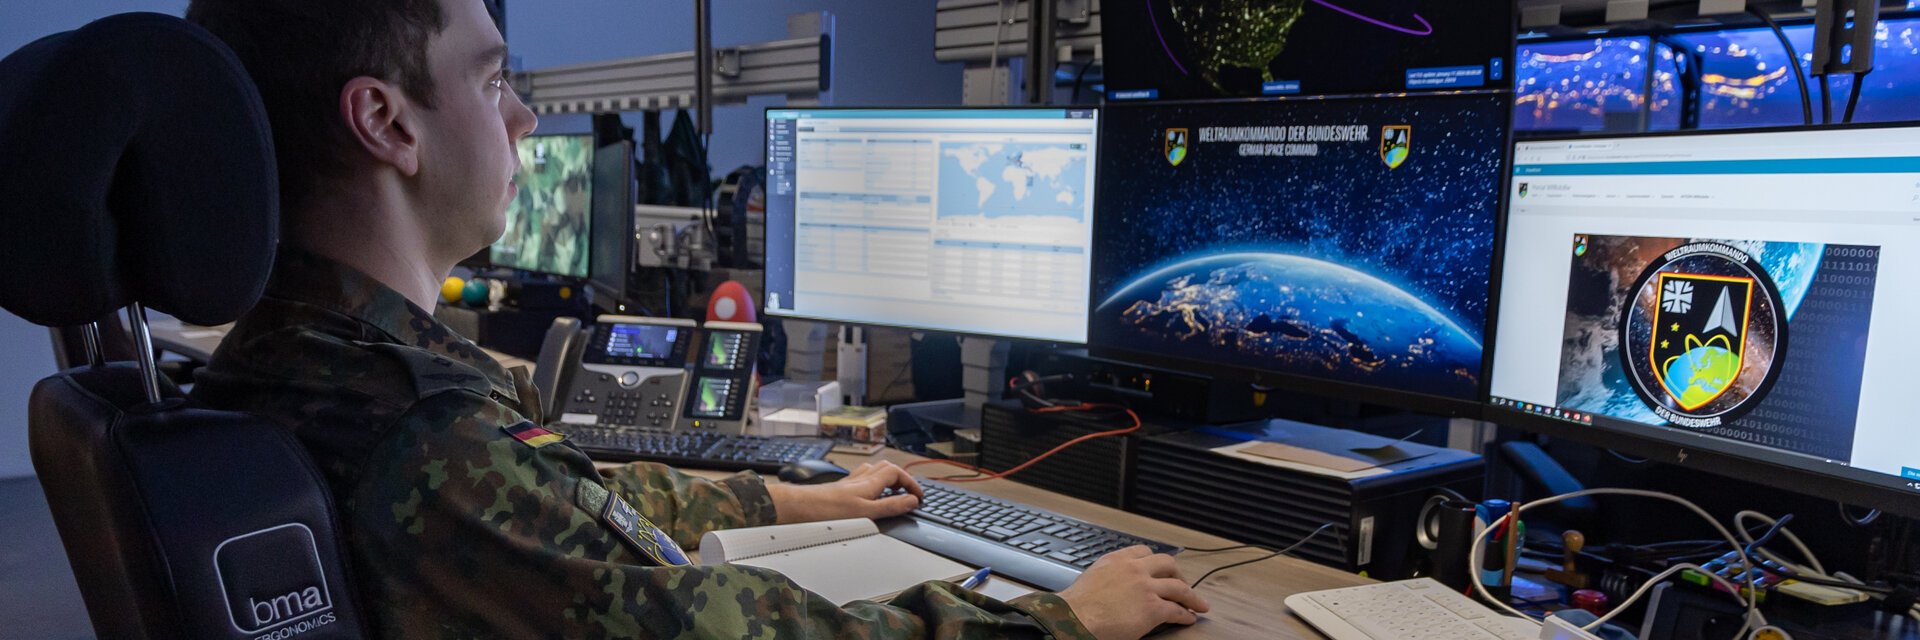 Ein Weltraumlageoffizier wertet an seinem Arbeitsplatz im Weltraumkommando der Bundeswehr in Uedem Daten aus